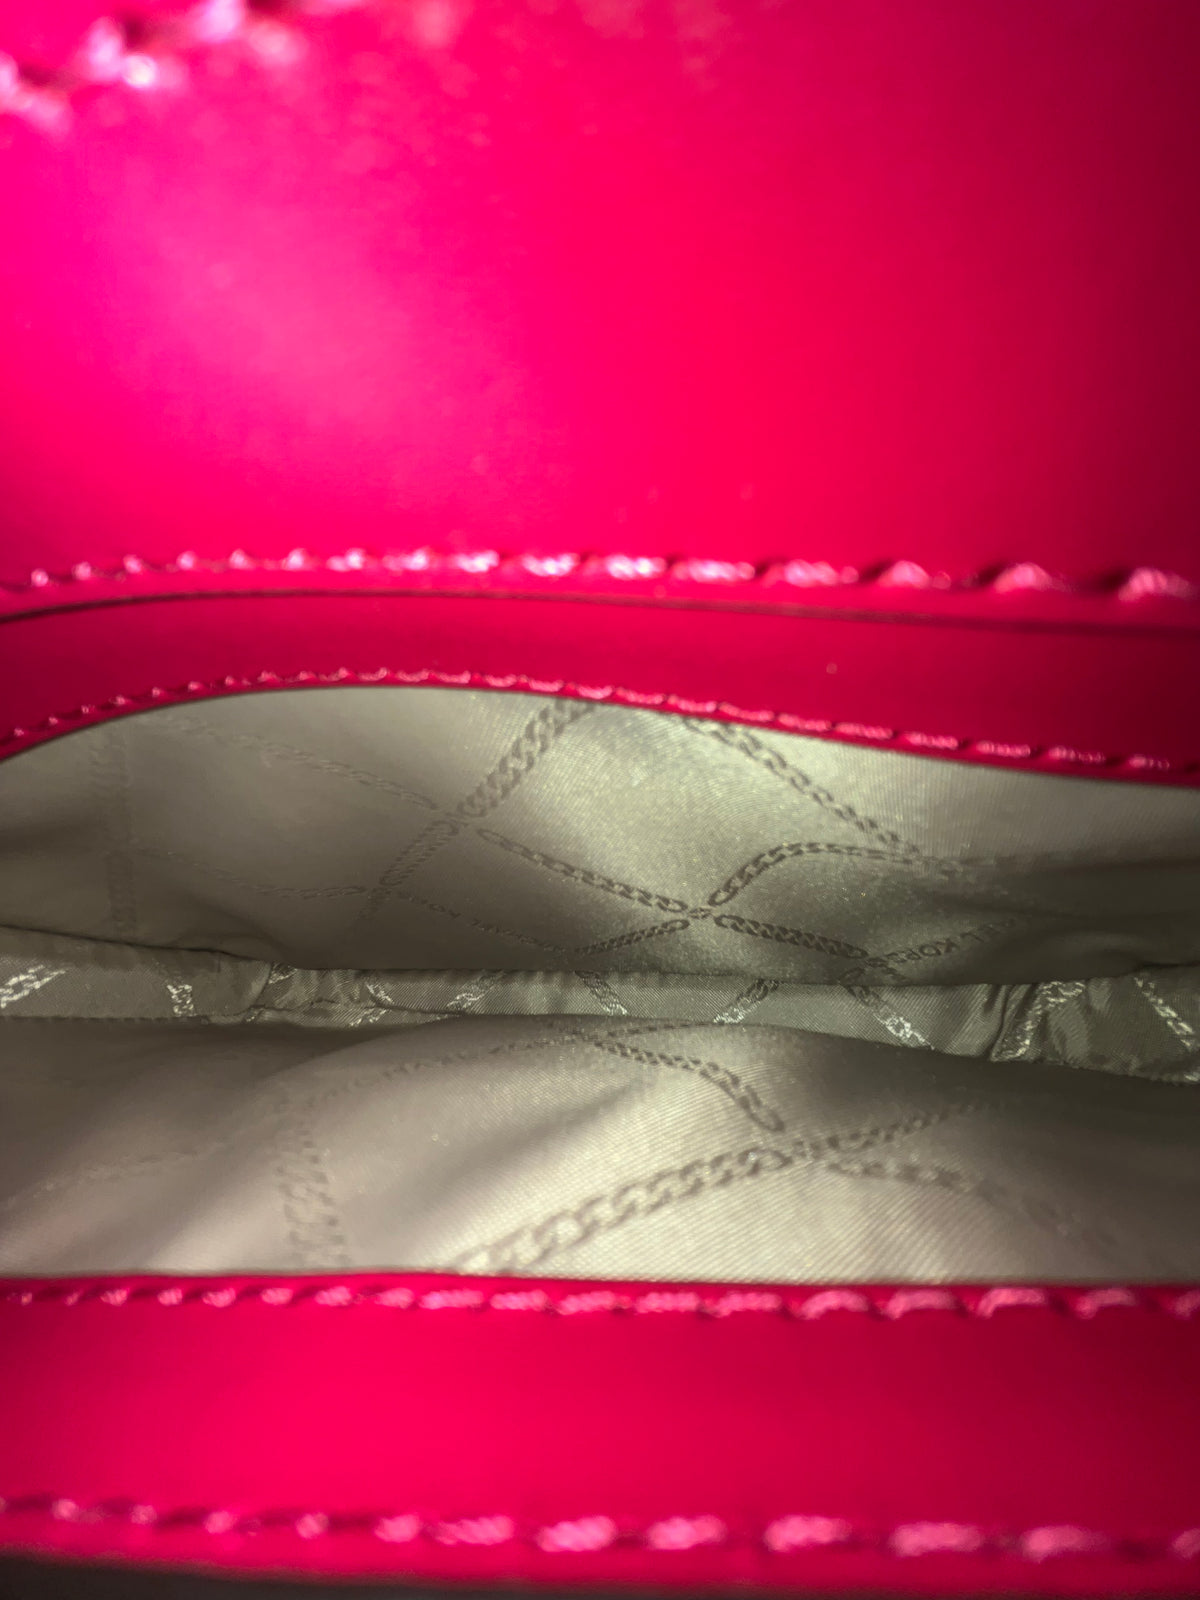 Michael Kors Pink Leather Color Block Shoulder Bag